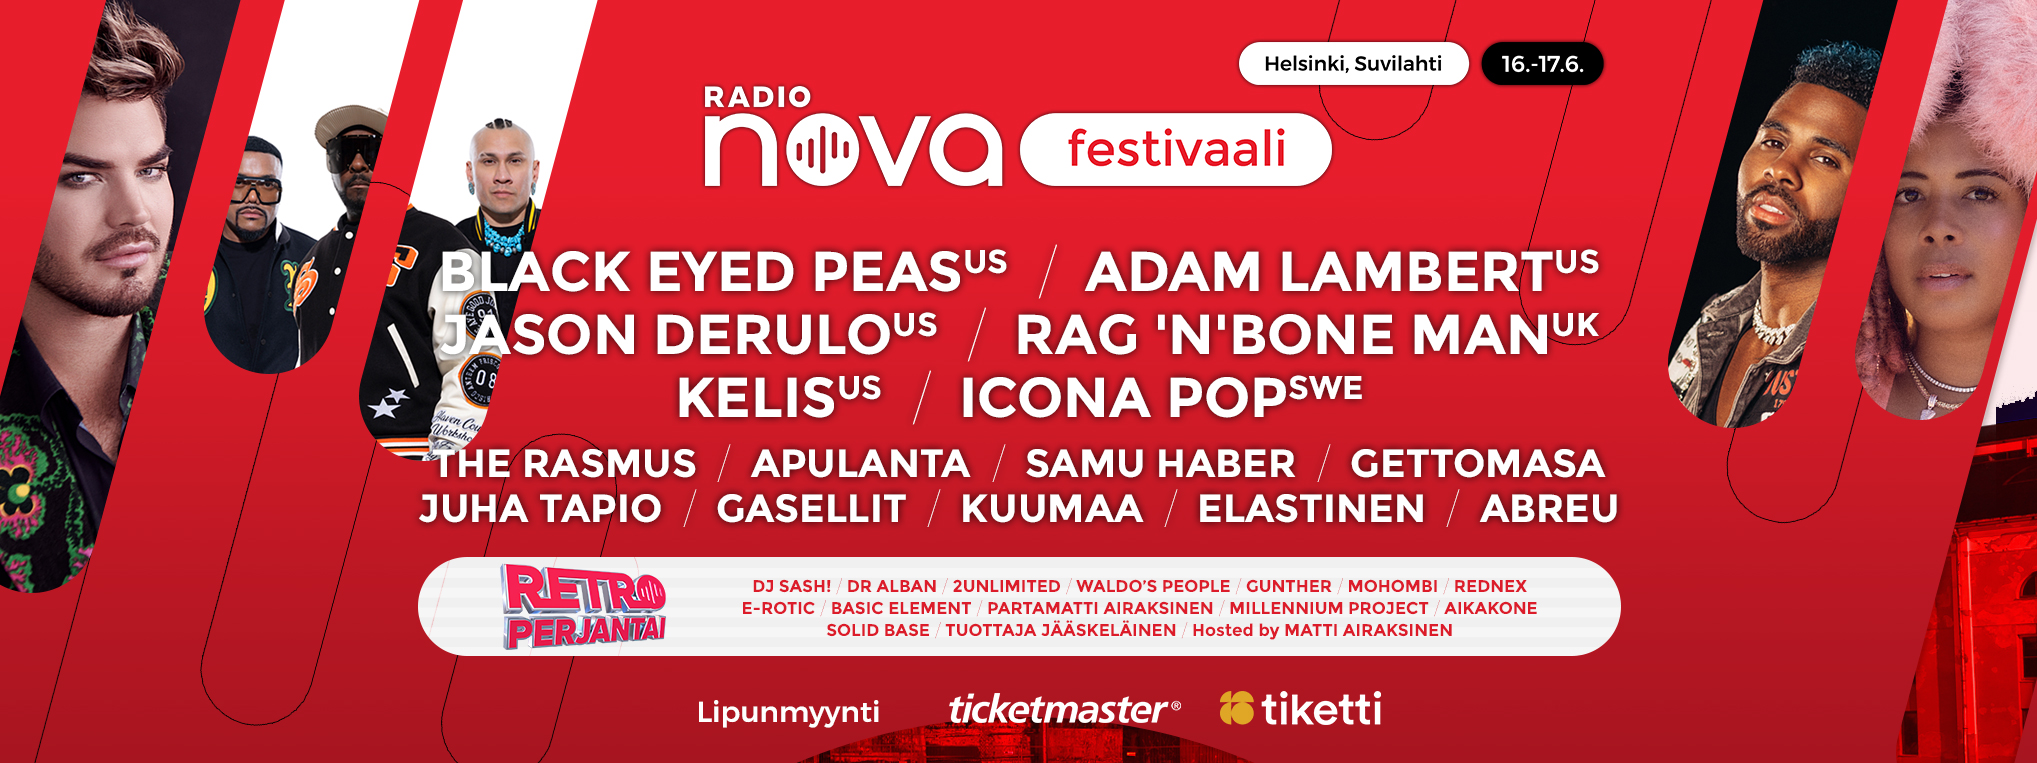 Radio Nova - Radio Nova